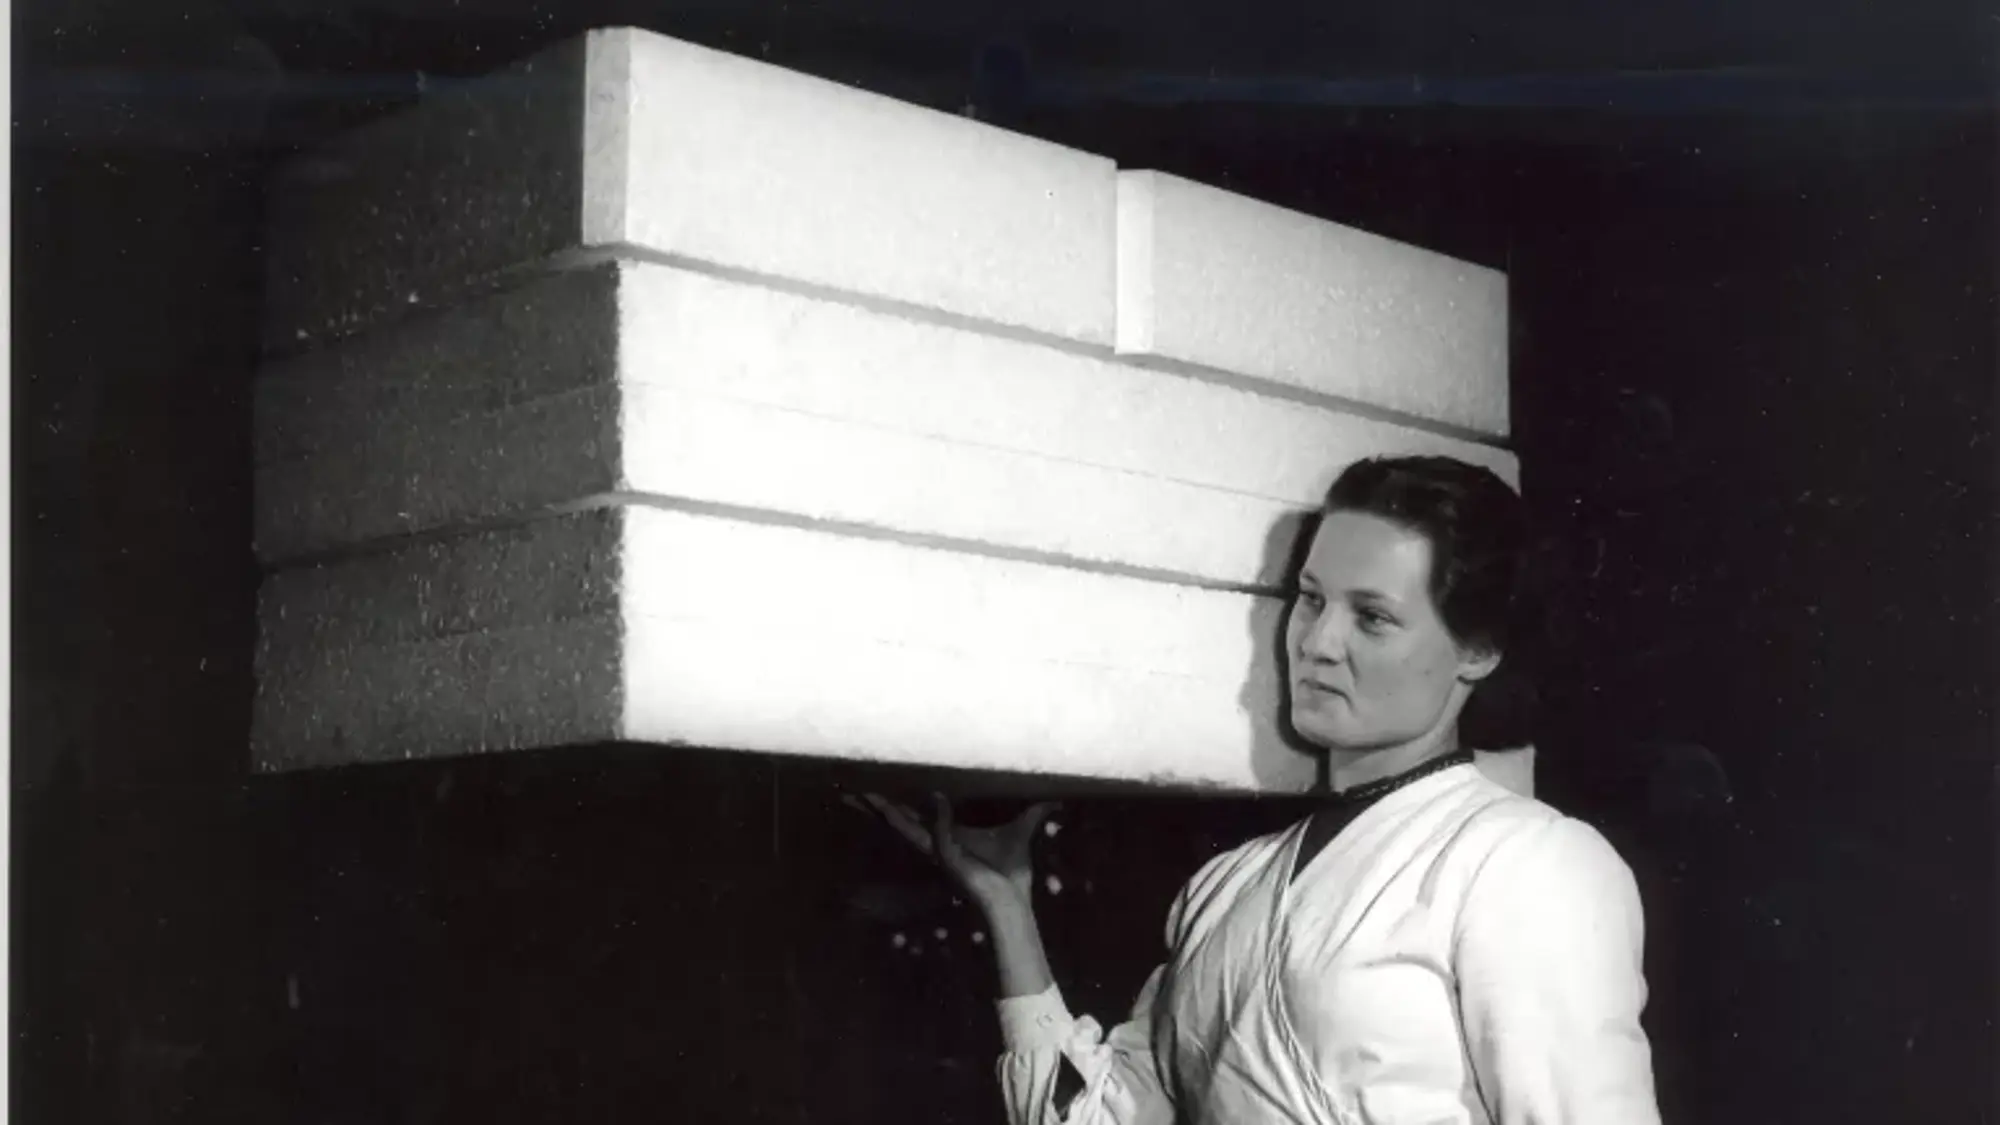 žena v bílém plášti nese tři bloky ze světlého, rozměrného, ale lehkého materiálu